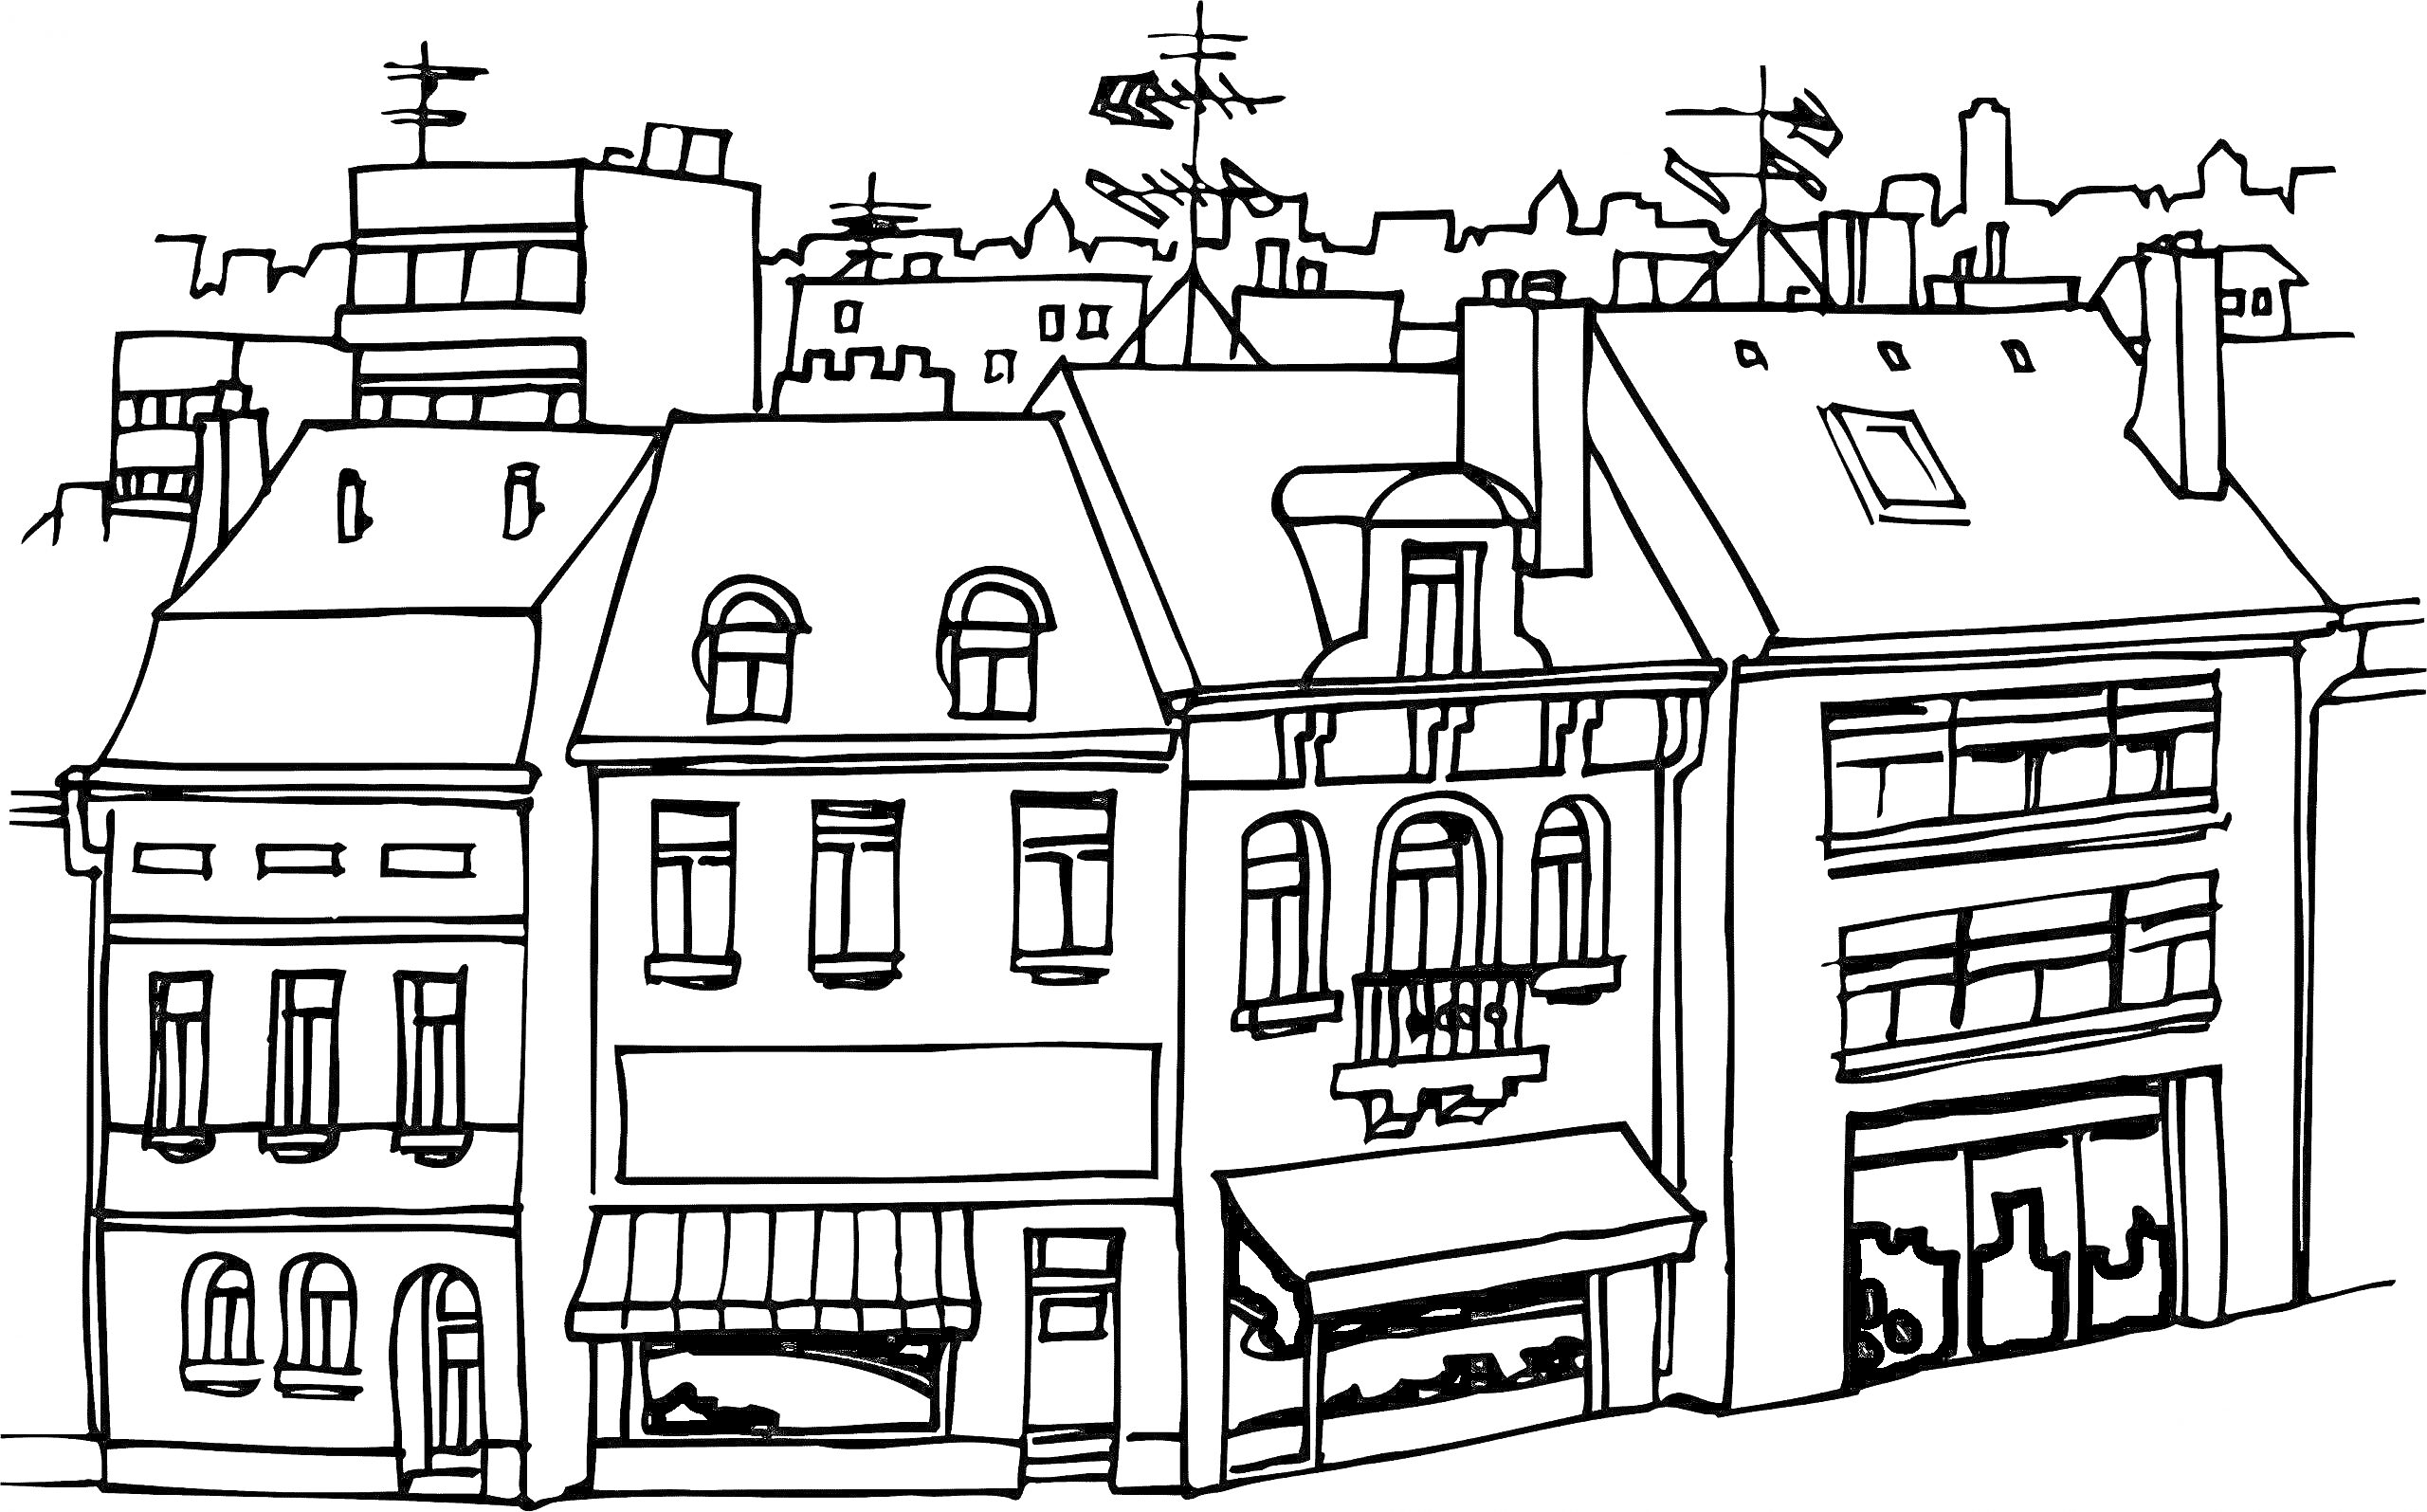 Раскраска Городская улица с жилыми и коммерческими зданиями, витринами магазинов, мансардными окнами и антеннами на крышах